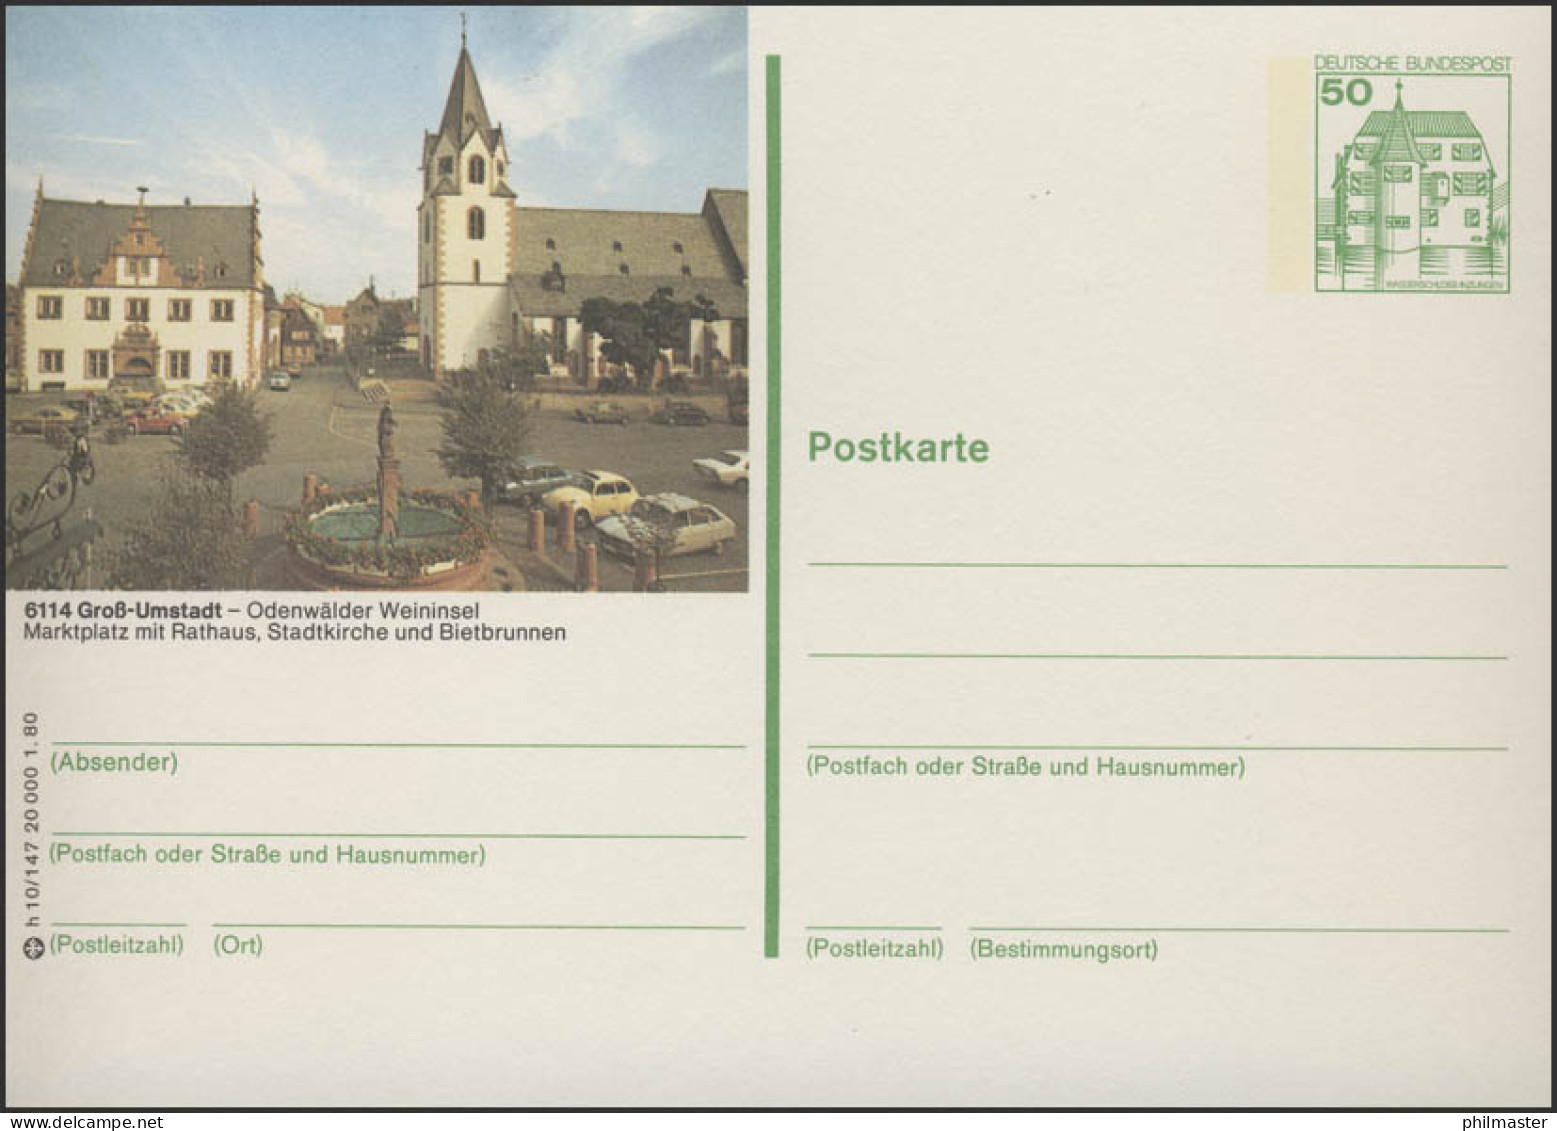 P130-h10/147 - 6114 Groß Umstadt - Marktplatz Rathaus ** - Postales Ilustrados - Nuevos